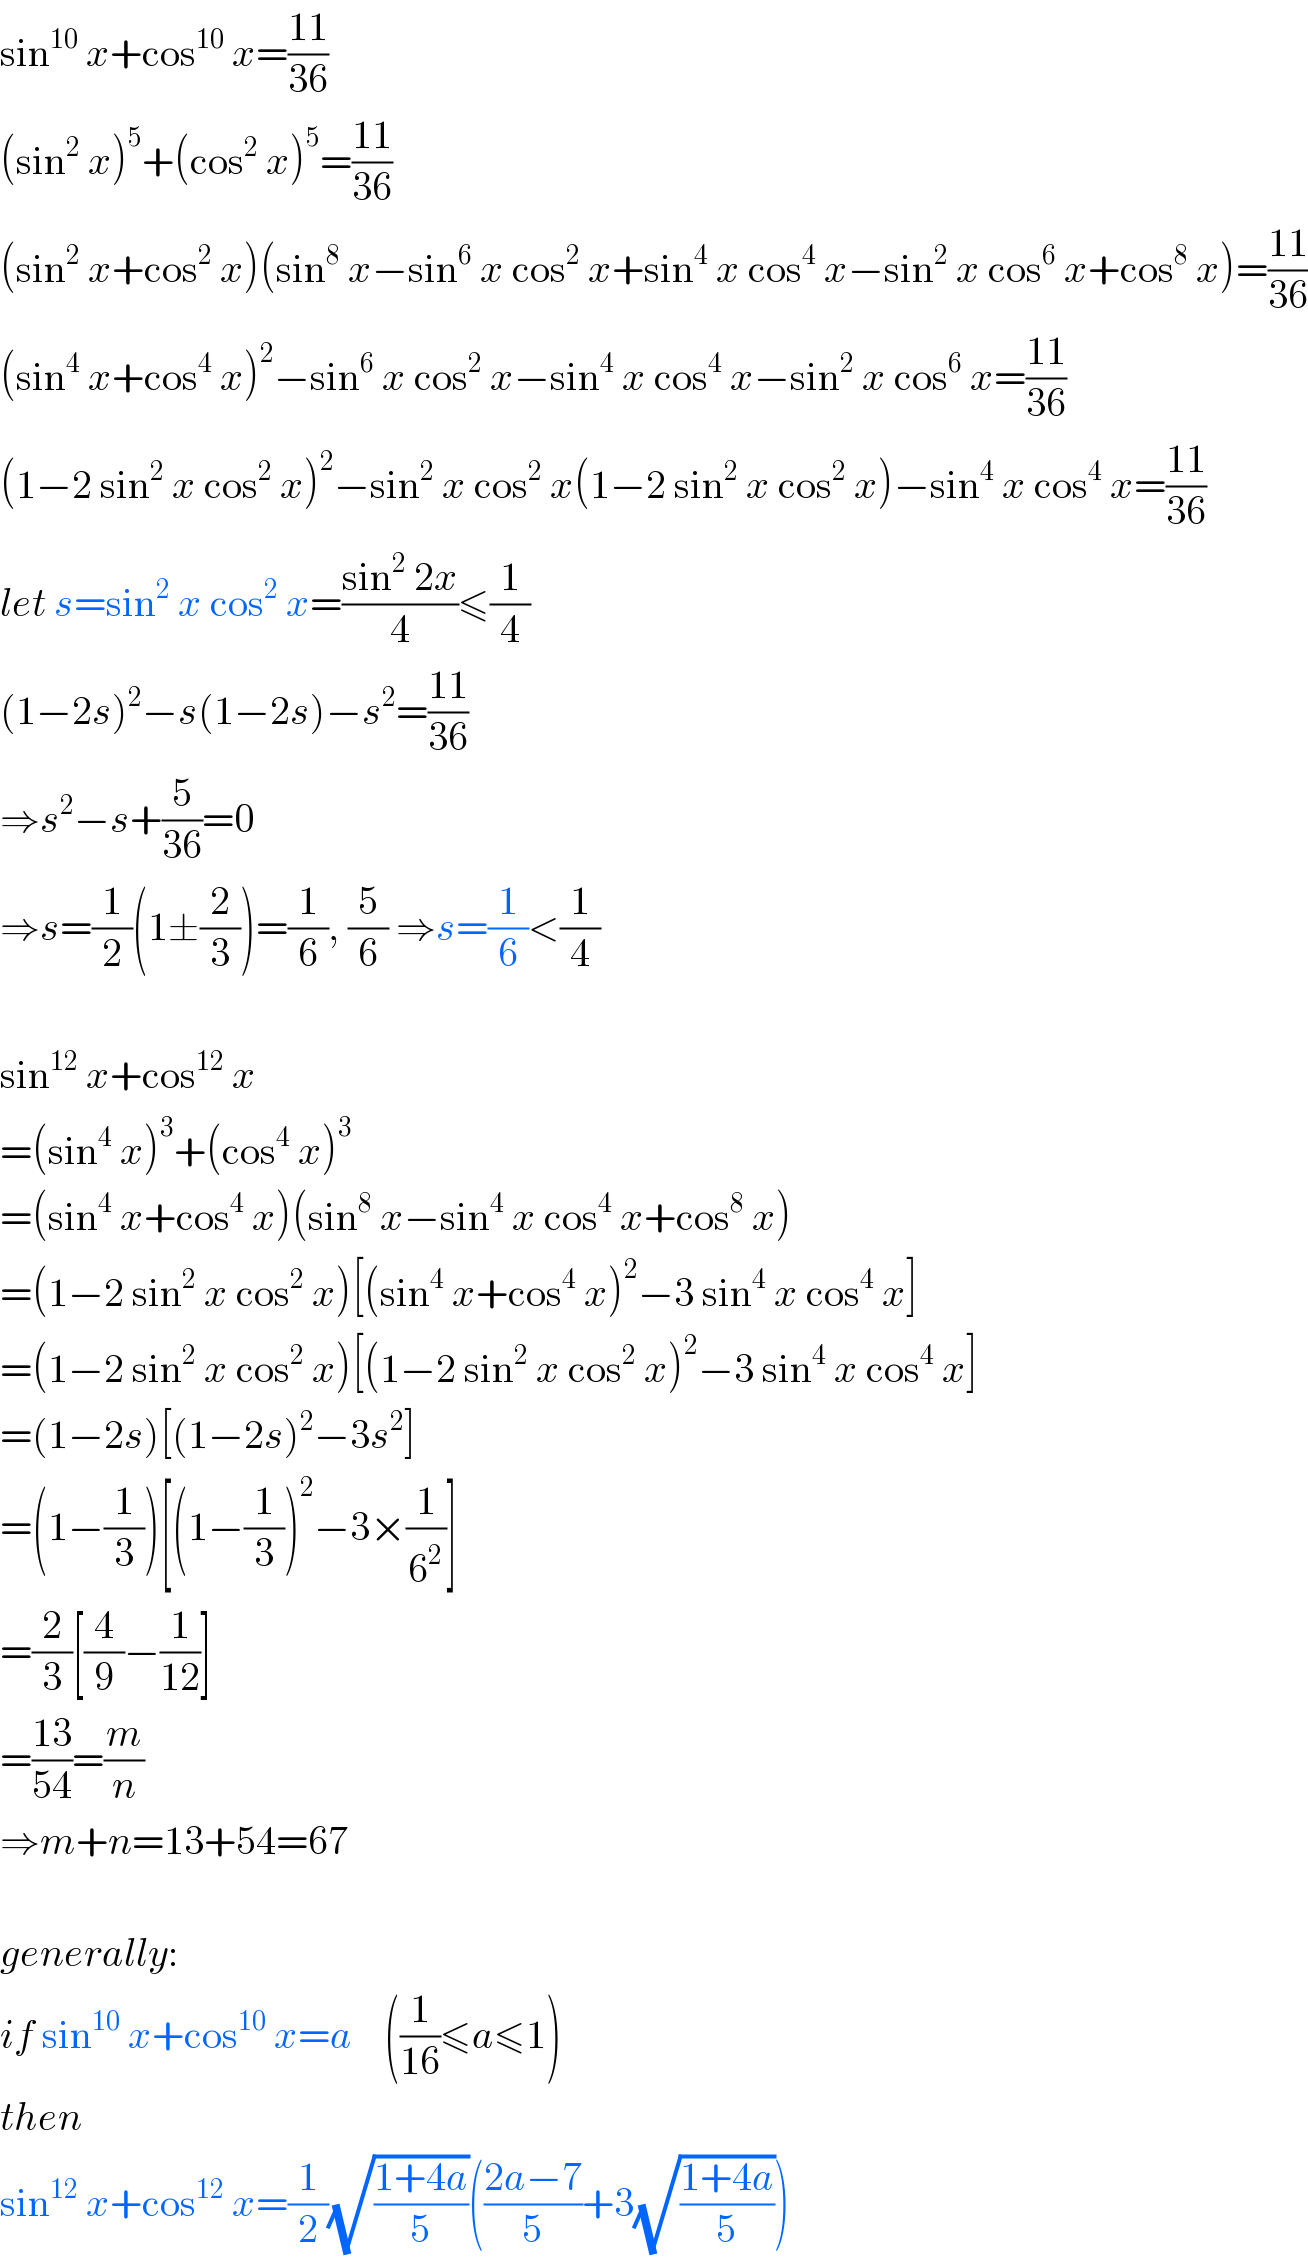 sin^(10)  x+cos^(10)  x=((11)/(36))  (sin^2  x)^5 +(cos^2  x)^5 =((11)/(36))  (sin^2  x+cos^2  x)(sin^8  x−sin^6  x cos^2  x+sin^4  x cos^4  x−sin^2  x cos^6  x+cos^8  x)=((11)/(36))  (sin^4  x+cos^4  x)^2 −sin^6  x cos^2  x−sin^4  x cos^4  x−sin^2  x cos^6  x=((11)/(36))  (1−2 sin^2  x cos^2  x)^2 −sin^2  x cos^2  x(1−2 sin^2  x cos^2  x)−sin^4  x cos^4  x=((11)/(36))  let s=sin^2  x cos^2  x=((sin^2  2x)/4)≤(1/4)  (1−2s)^2 −s(1−2s)−s^2 =((11)/(36))  ⇒s^2 −s+(5/(36))=0  ⇒s=(1/2)(1±(2/3))=(1/6), (5/6) ⇒s=(1/6)<(1/4)    sin^(12)  x+cos^(12)  x  =(sin^4  x)^3 +(cos^4  x)^3   =(sin^4  x+cos^4  x)(sin^8  x−sin^4  x cos^4  x+cos^8  x)  =(1−2 sin^2  x cos^2  x)[(sin^4  x+cos^4  x)^2 −3 sin^4  x cos^4  x]  =(1−2 sin^2  x cos^2  x)[(1−2 sin^2  x cos^2  x)^2 −3 sin^4  x cos^4  x]  =(1−2s)[(1−2s)^2 −3s^2 ]  =(1−(1/3))[(1−(1/3))^2 −3×(1/6^2 )]  =(2/3)[(4/9)−(1/(12))]  =((13)/(54))=(m/n)  ⇒m+n=13+54=67    generally:  if sin^(10)  x+cos^(10)  x=a    ((1/(16))≤a≤1)  then  sin^(12)  x+cos^(12)  x=(1/2)(√((1+4a)/5))(((2a−7)/5)+3(√((1+4a)/5)))  